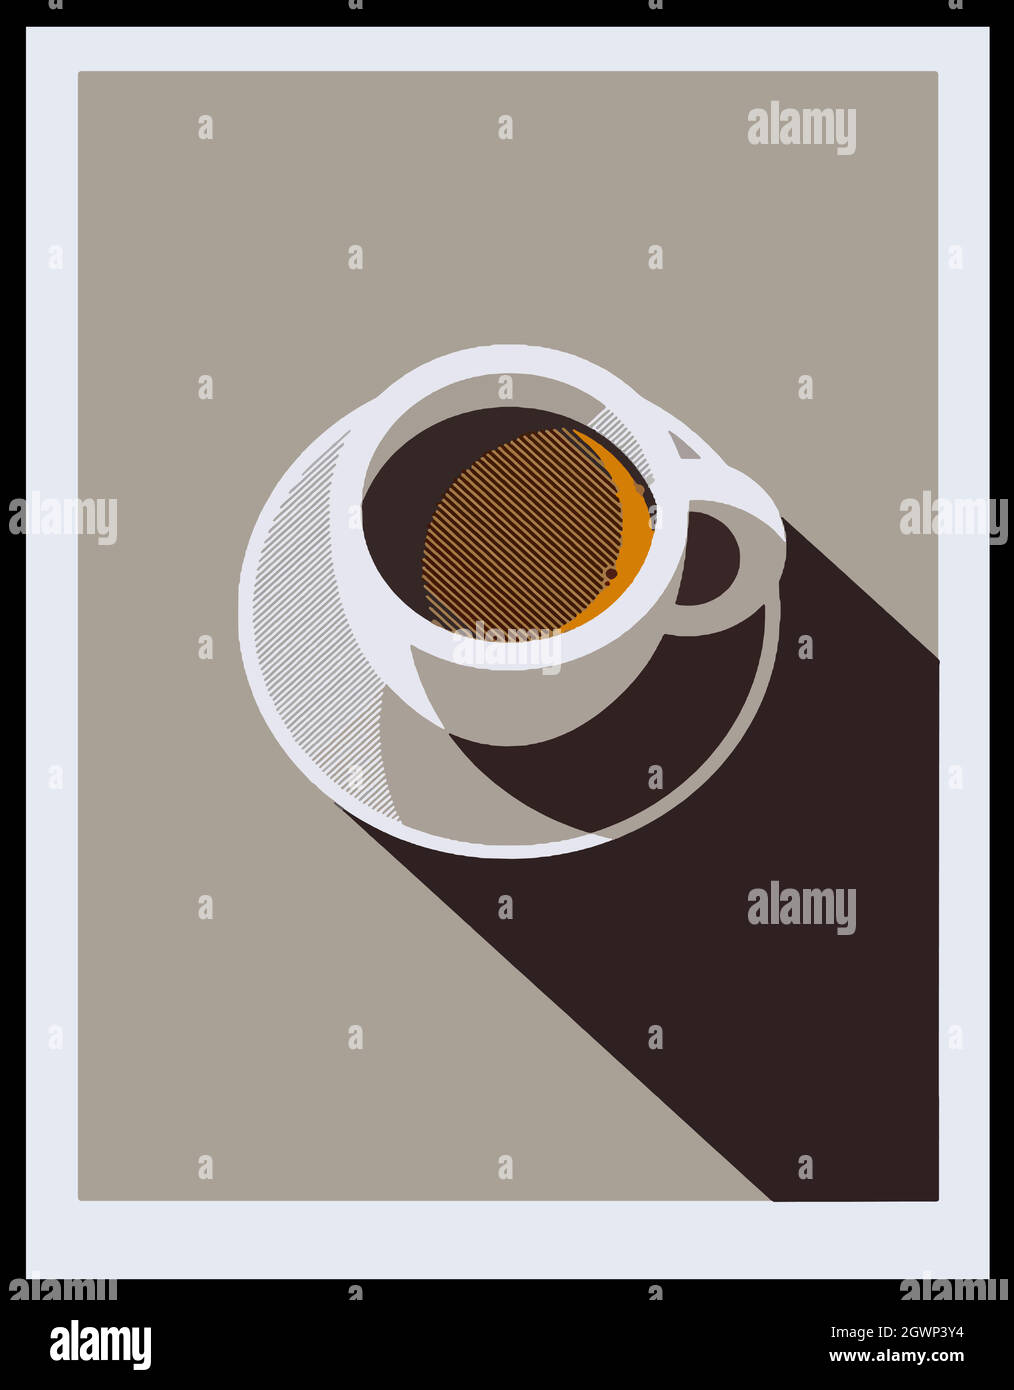 Poster im minimalistischen Design. Tasse Kaffee auf grauem Hintergrund. Blick von oben. Stock Vektor